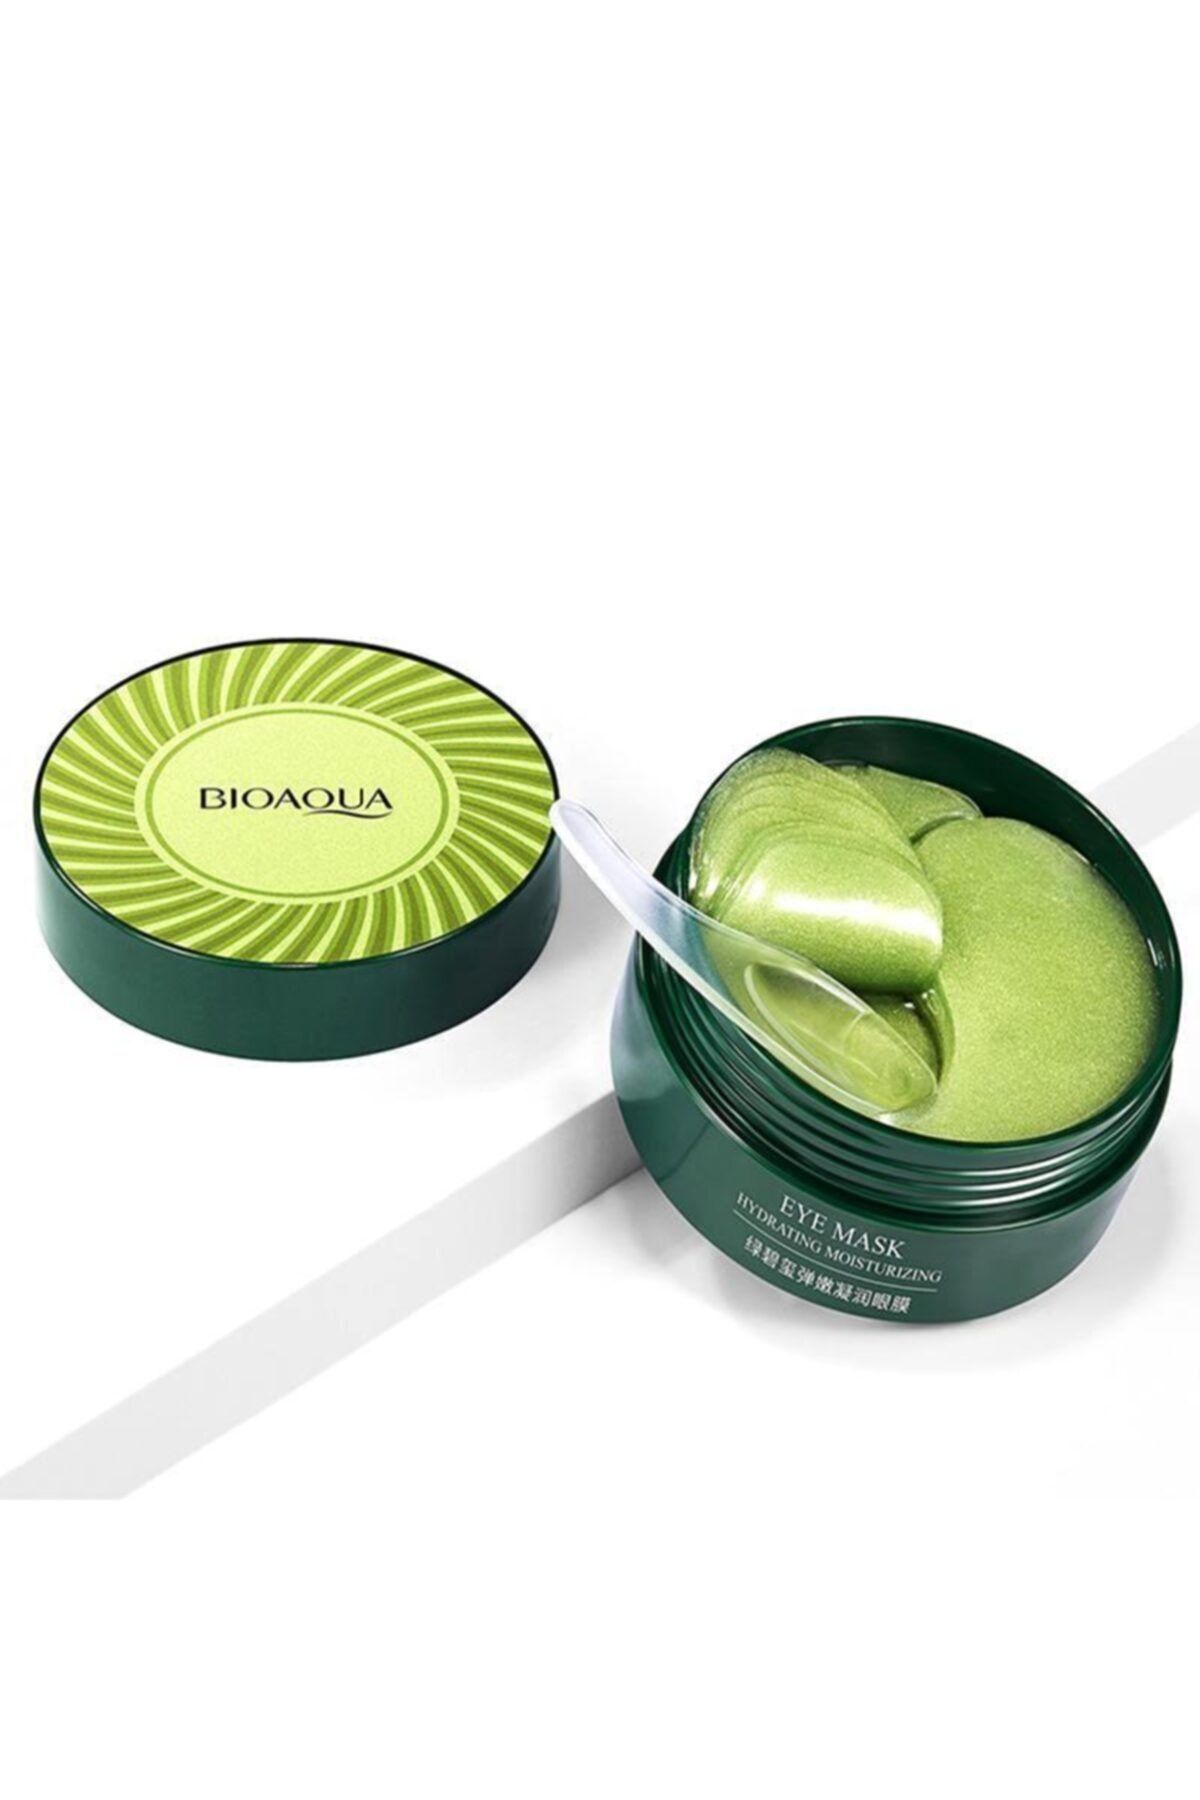 BIOAQUA Yeşil Turmalin Kristal Kolajen Sıkılaştırıcı Göz Maskeleri 80 gr - 60 adet